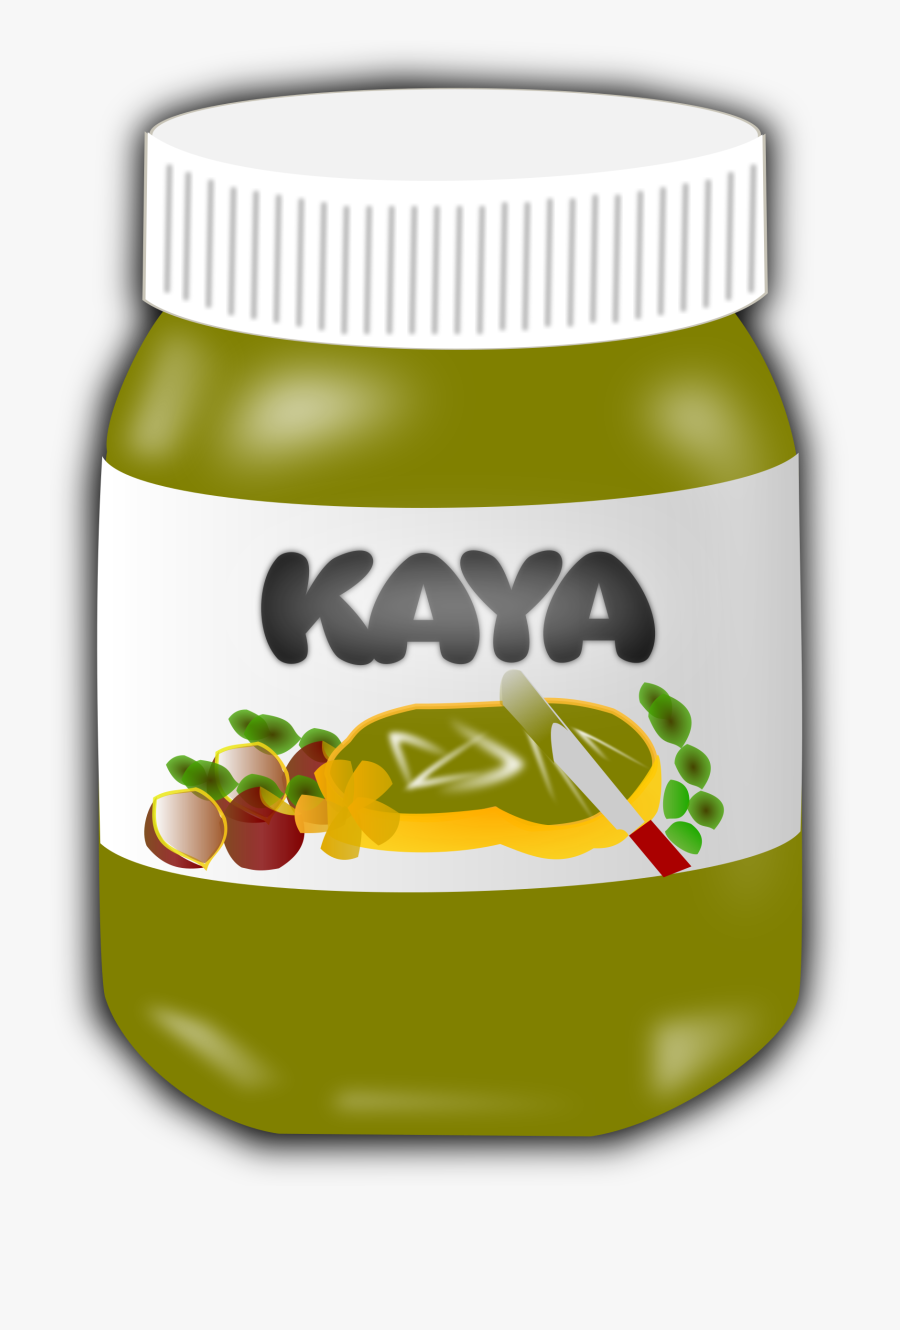 Nyonya Kaya Big Image - Chocolate Jar Clipart, Transparent Clipart